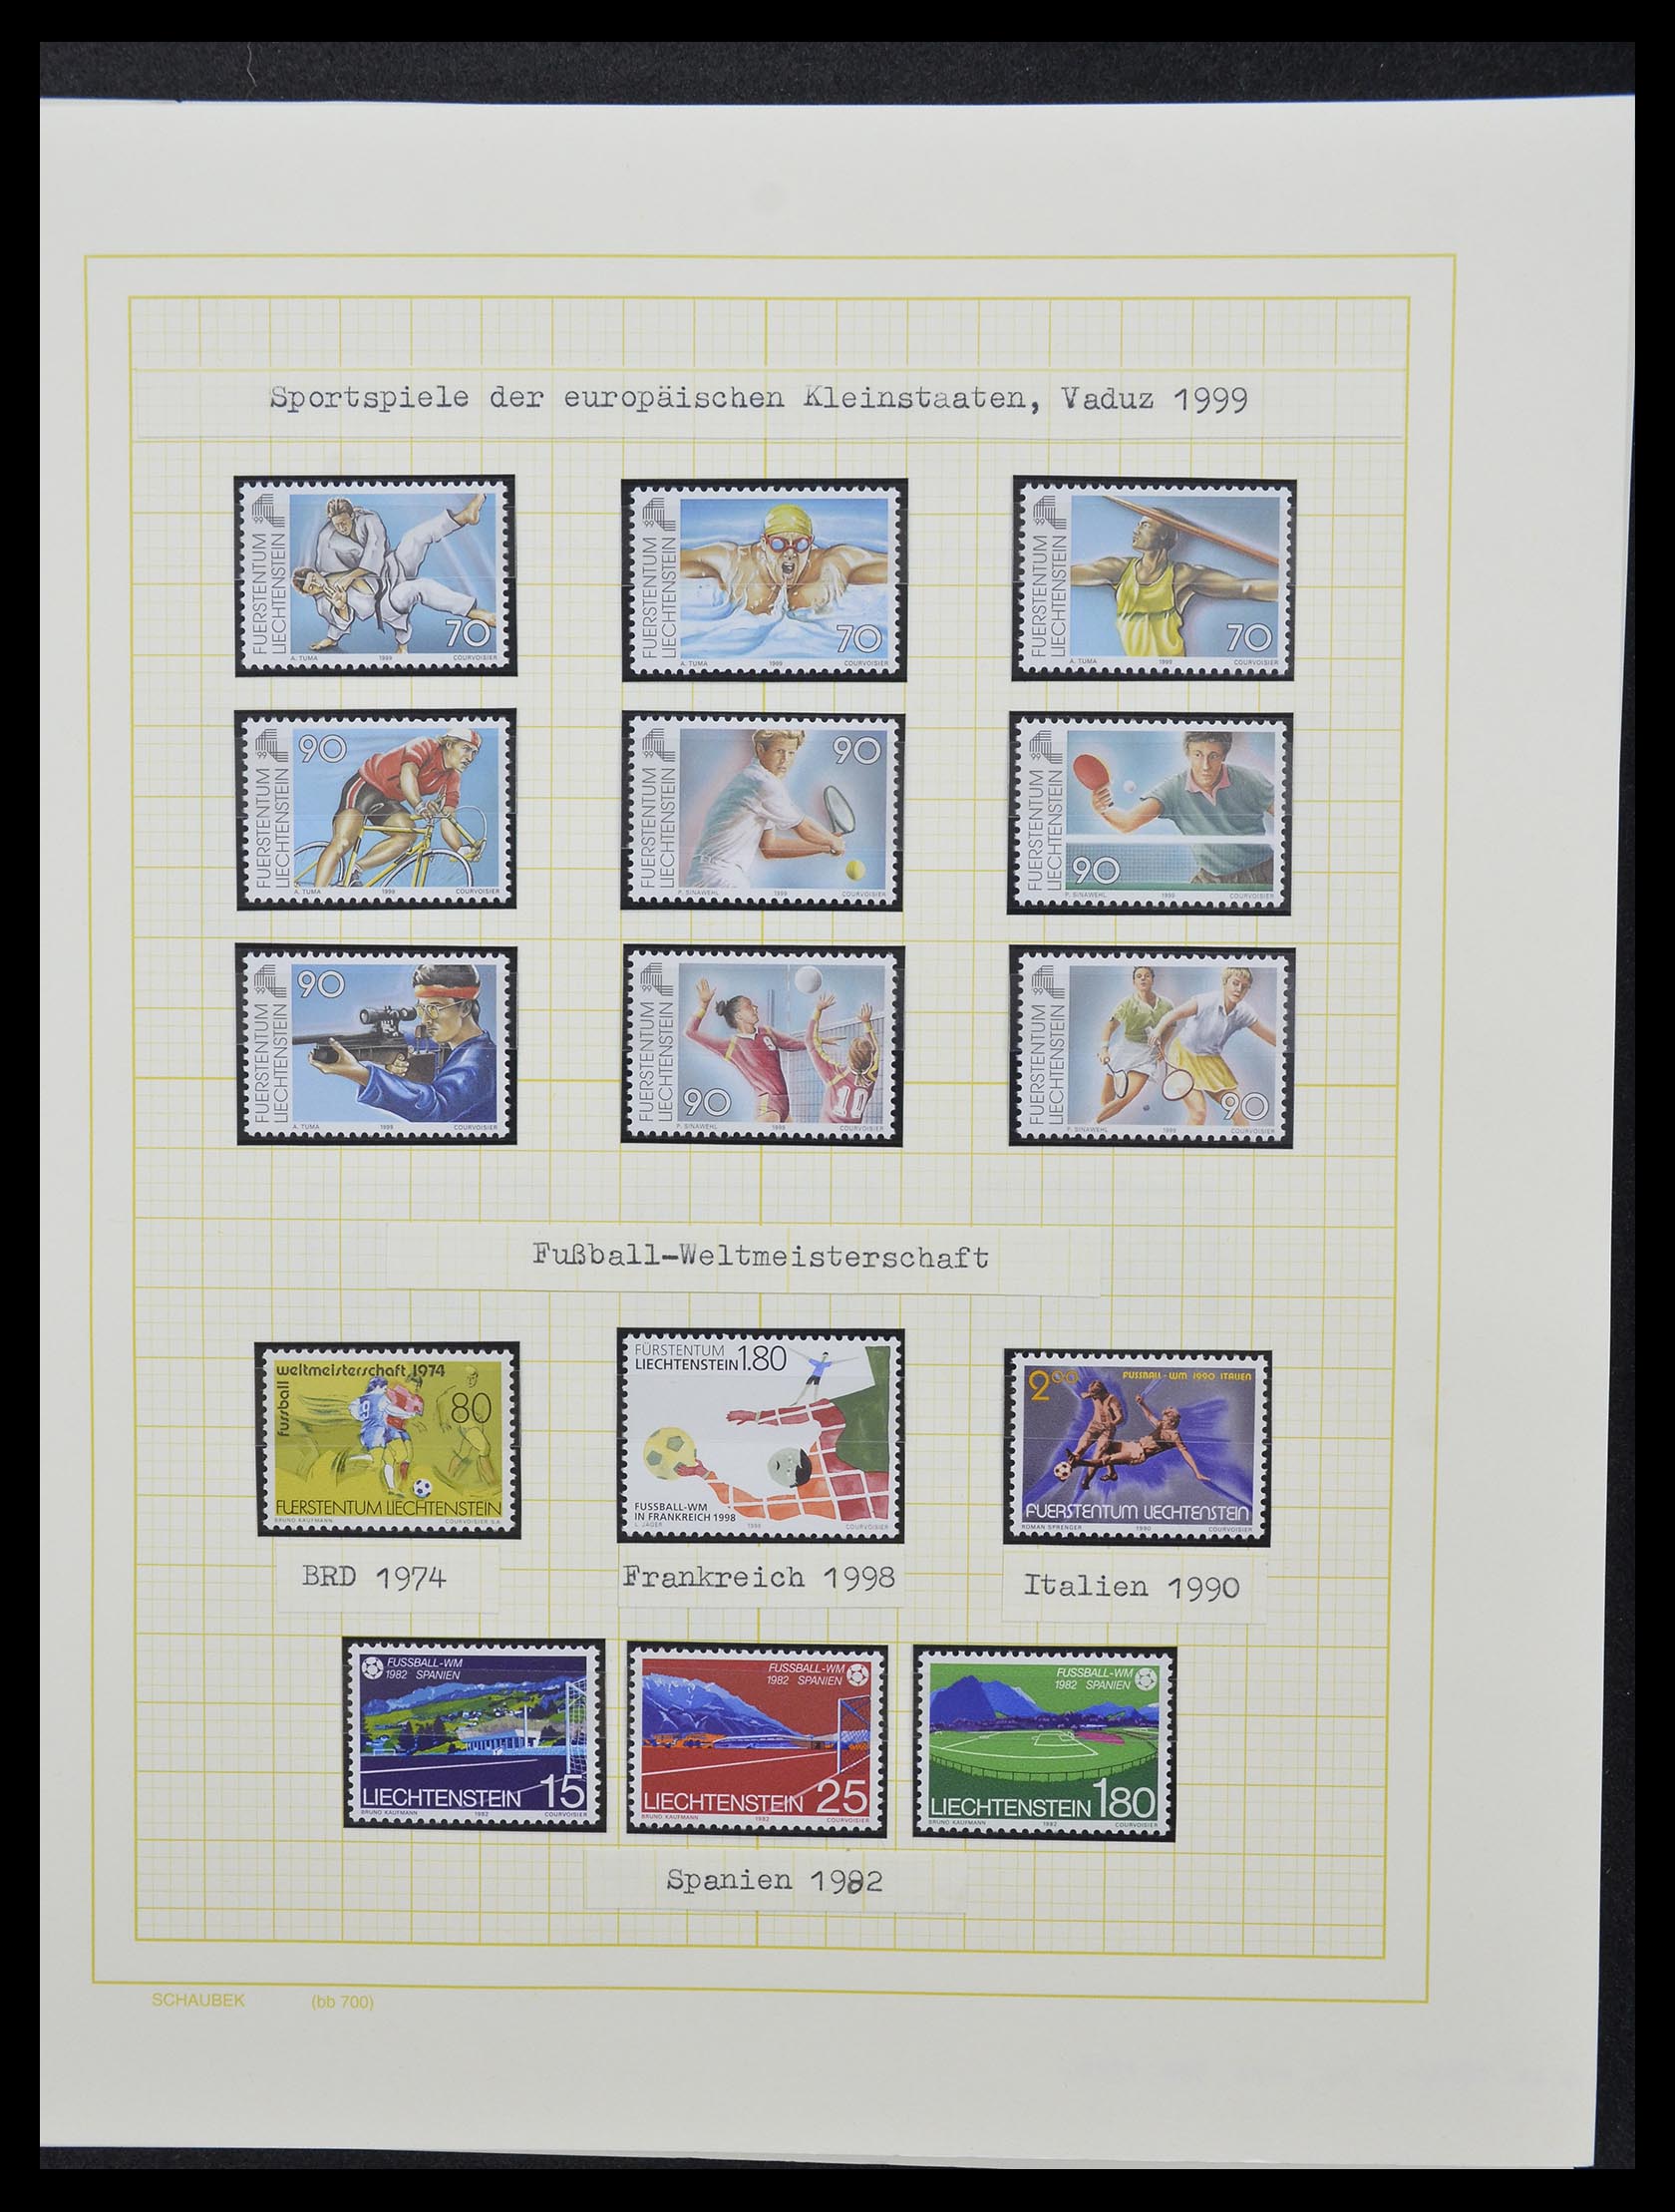 33138 086 - Stamp collection 33138 Liechtenstein 1912-2002.